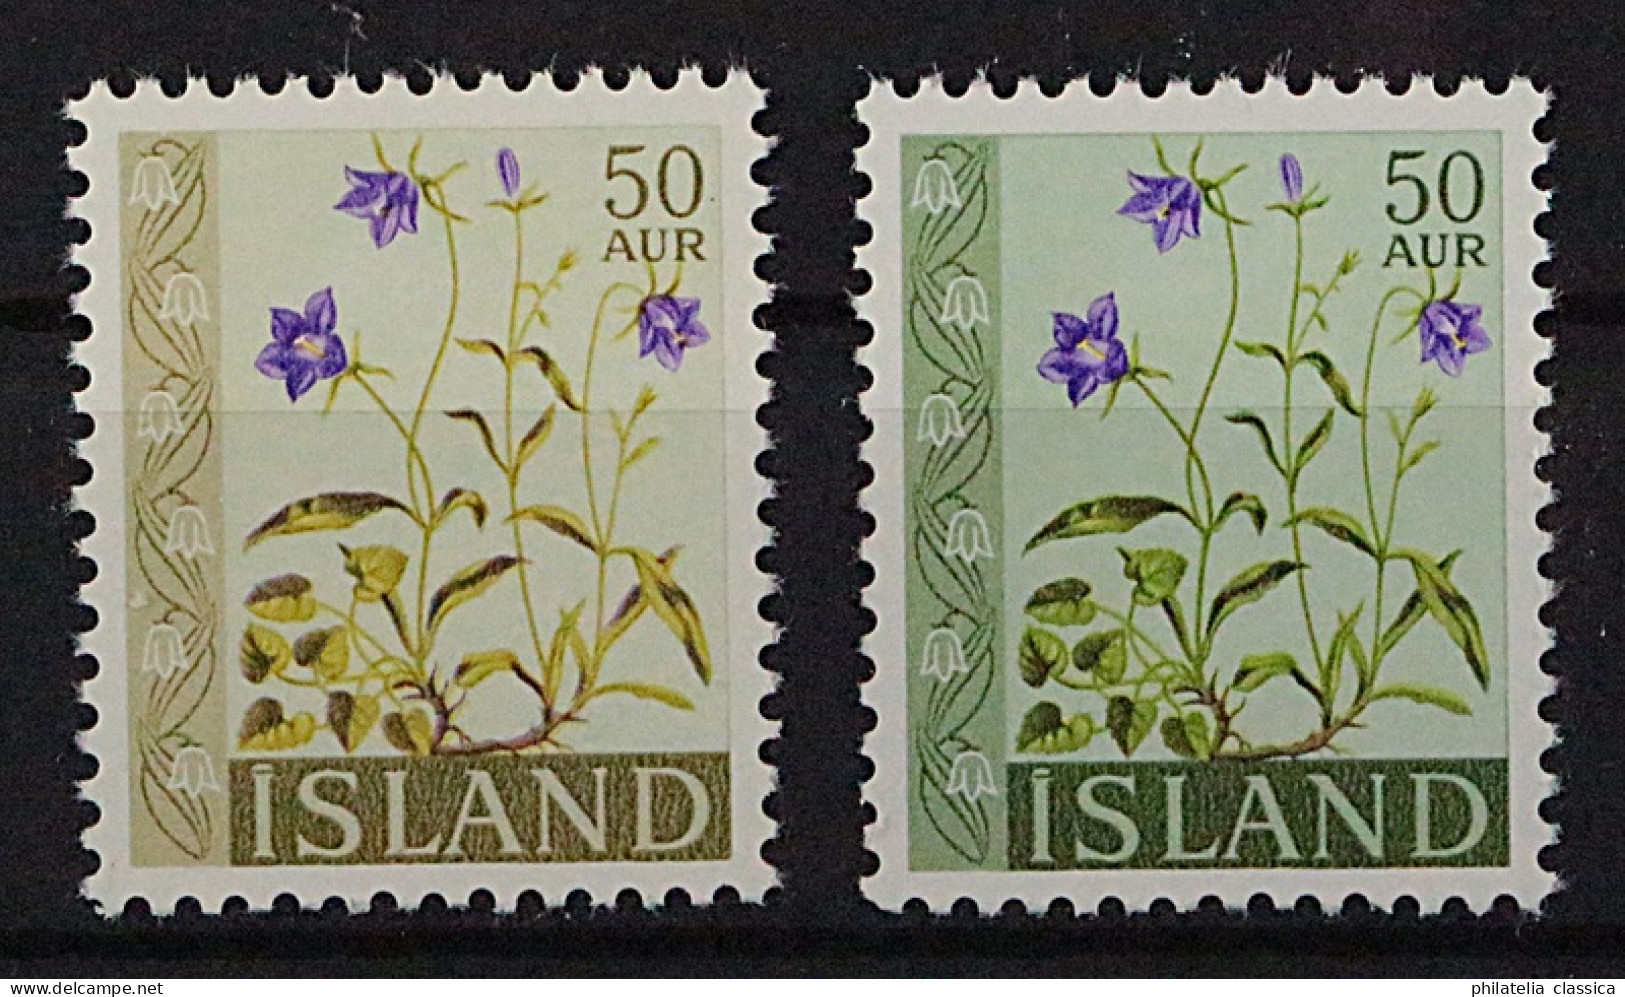 ISLAND 359 F ** Blumen 50 A. Glockenblume, FEHLDRUCK, Sehr SELTEN, Postfrisch, - Ungebraucht